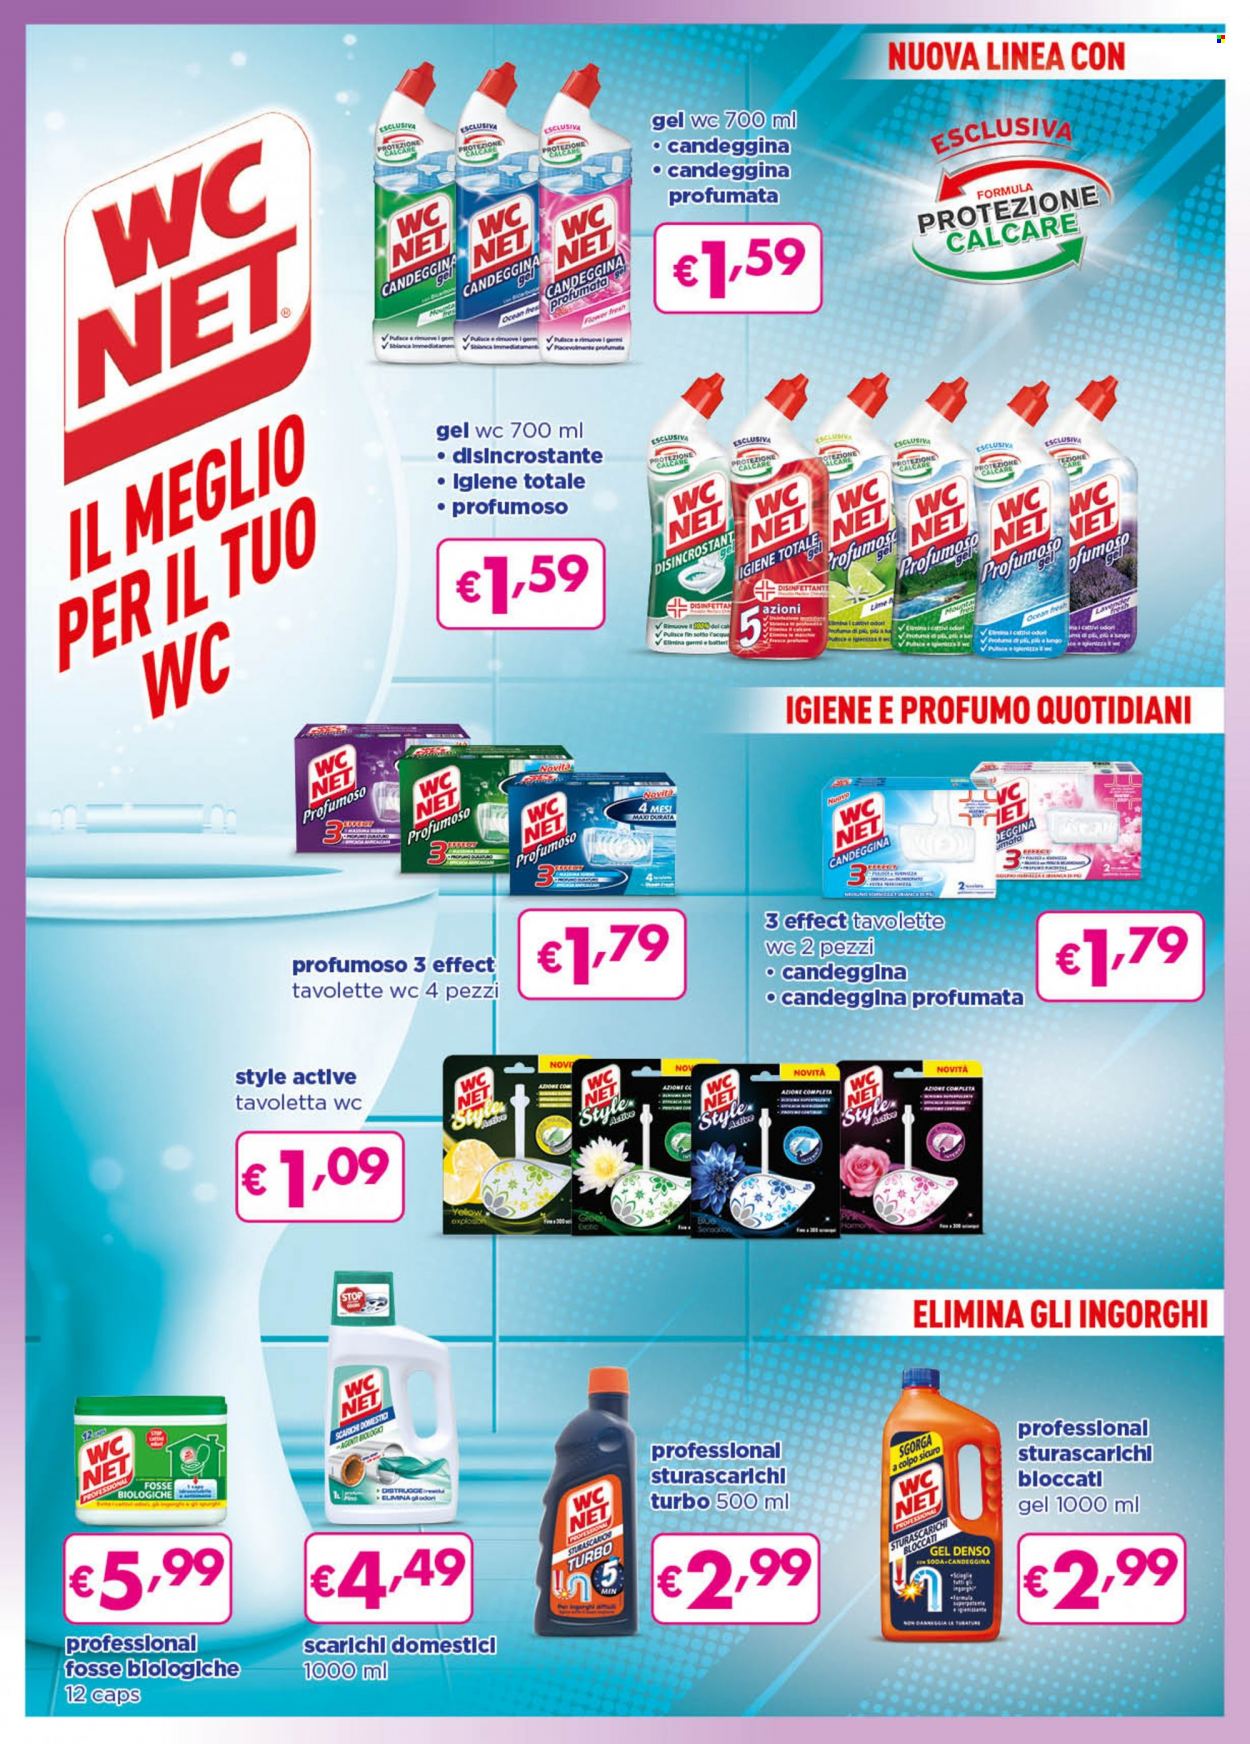 thumbnail - Volantino Acqua & Sapone - 1/11/2021 - 30/11/2021 - Prodotti in offerta - WC Net, detergente WC, tavoletta WC, profumo. Pagina 2.